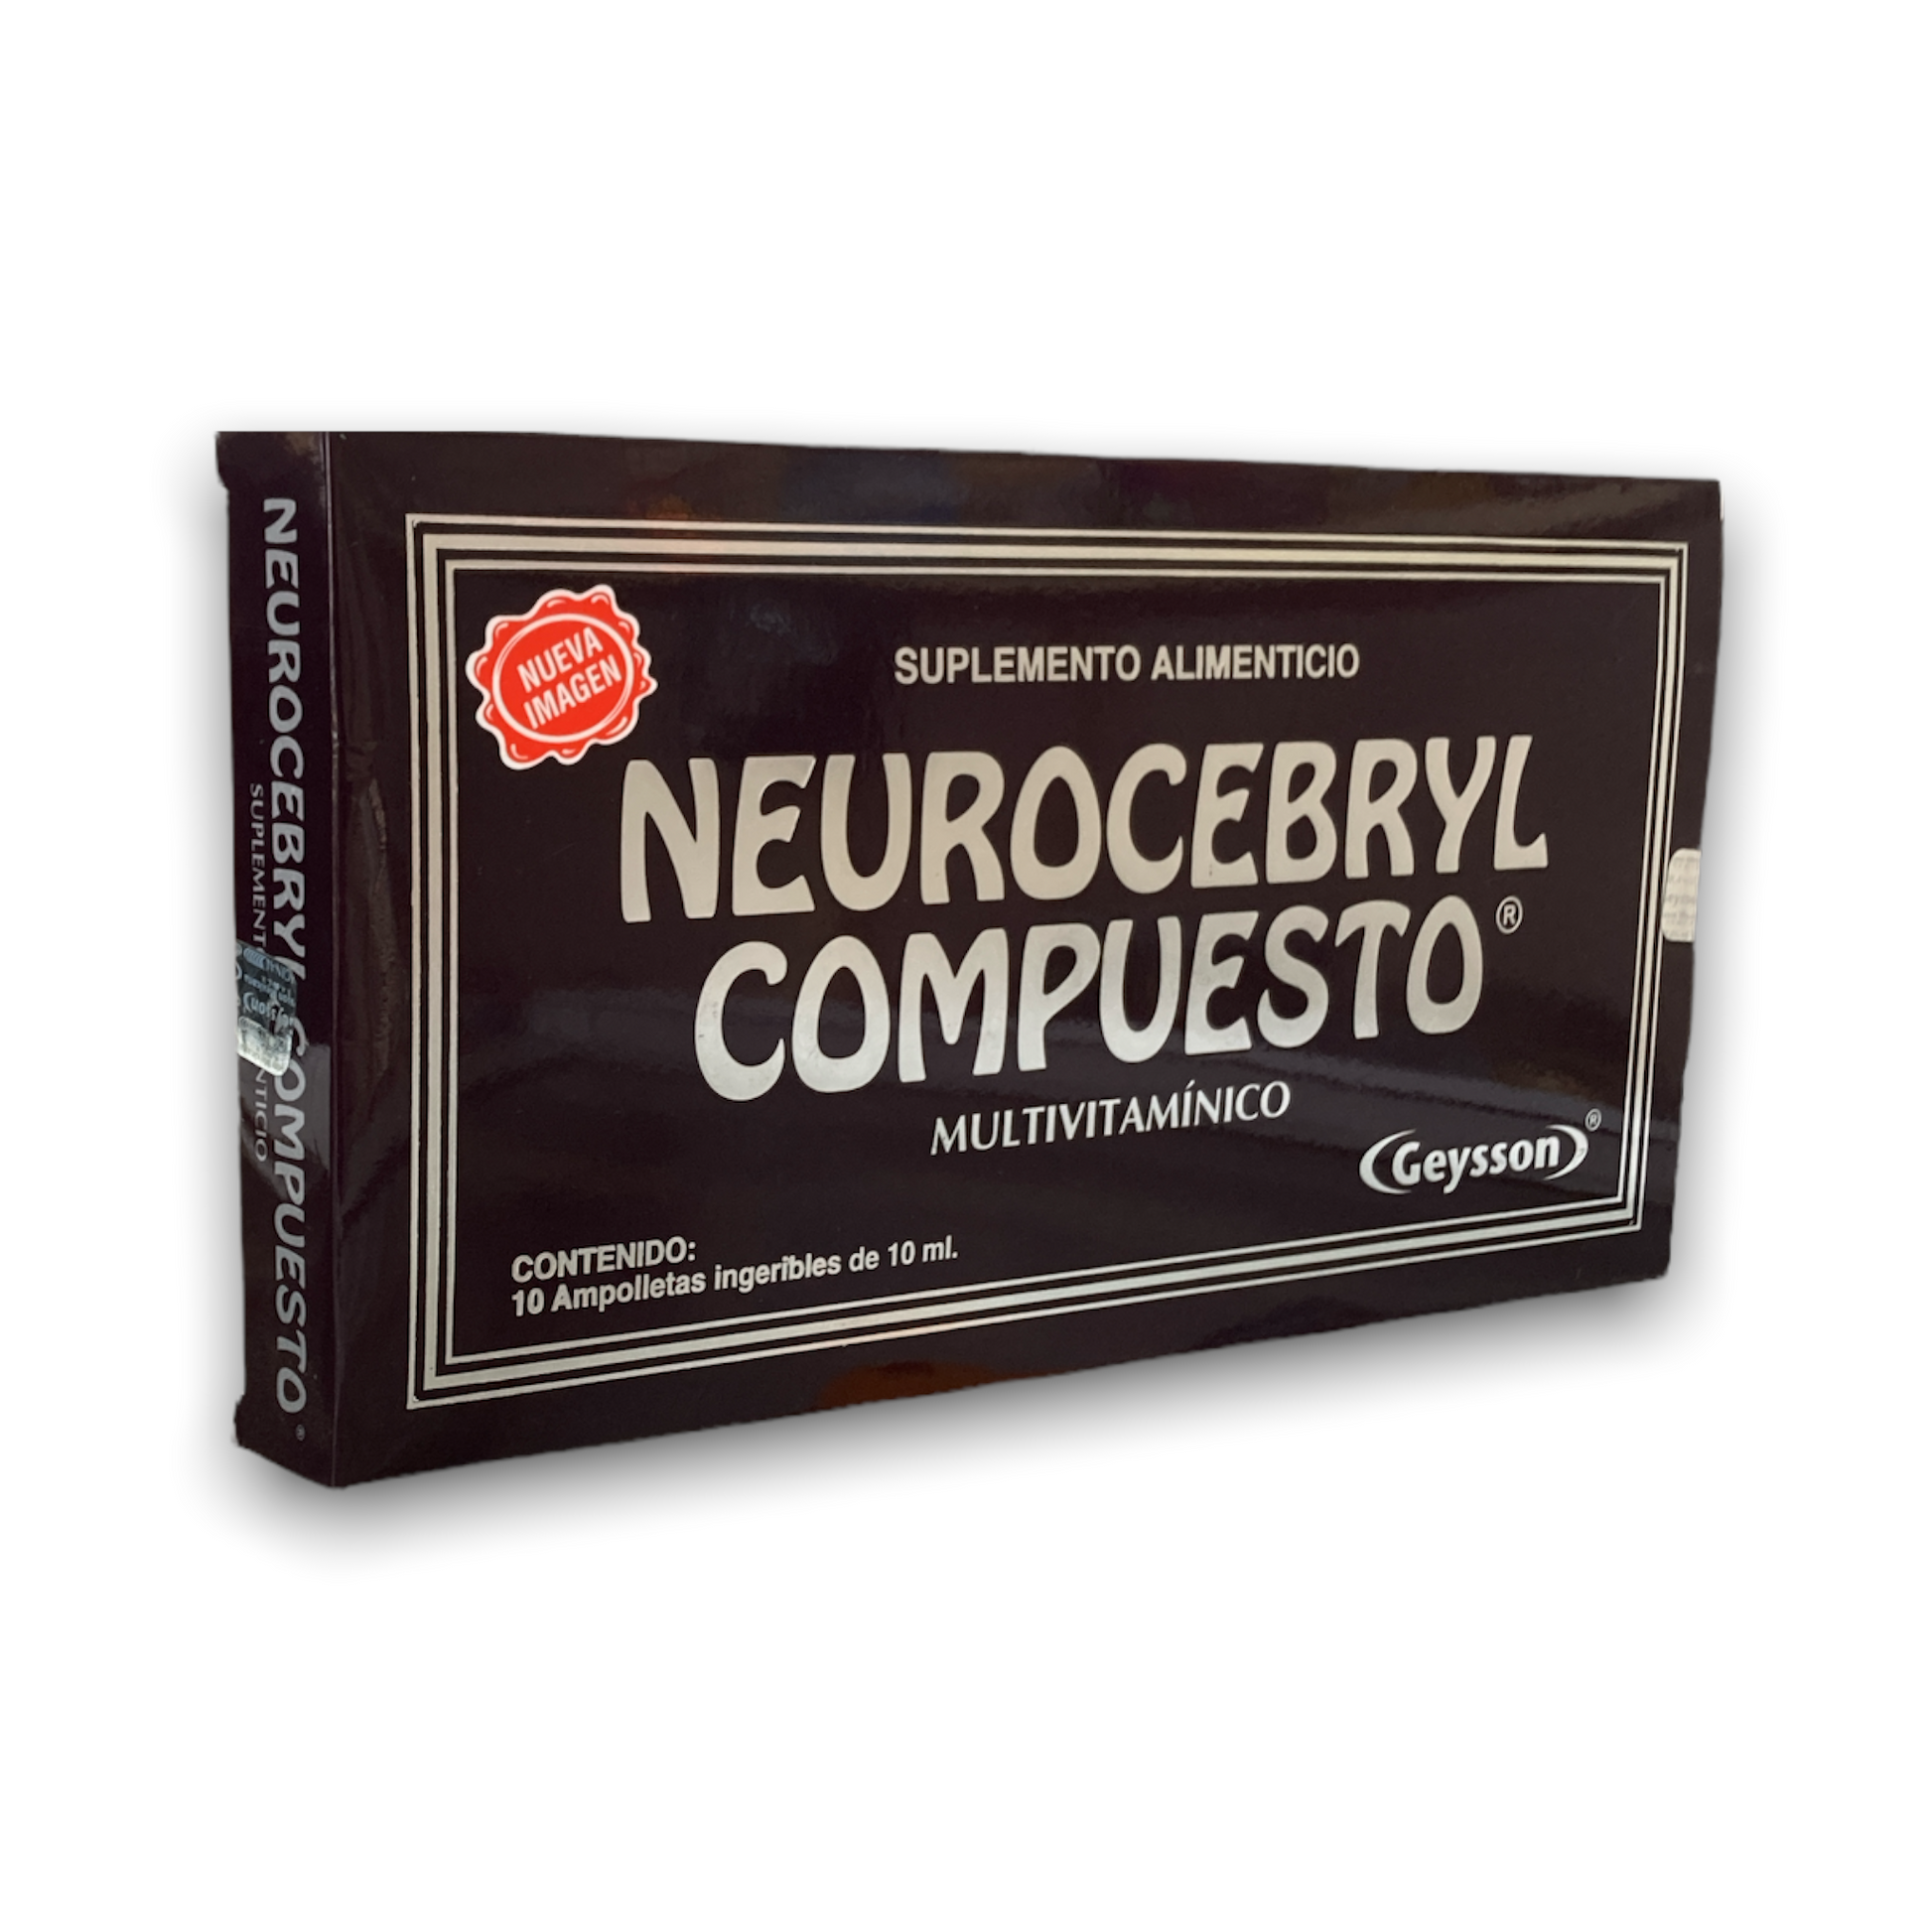 Neurocerebryl Compuesto 10 ampolletas Geysson